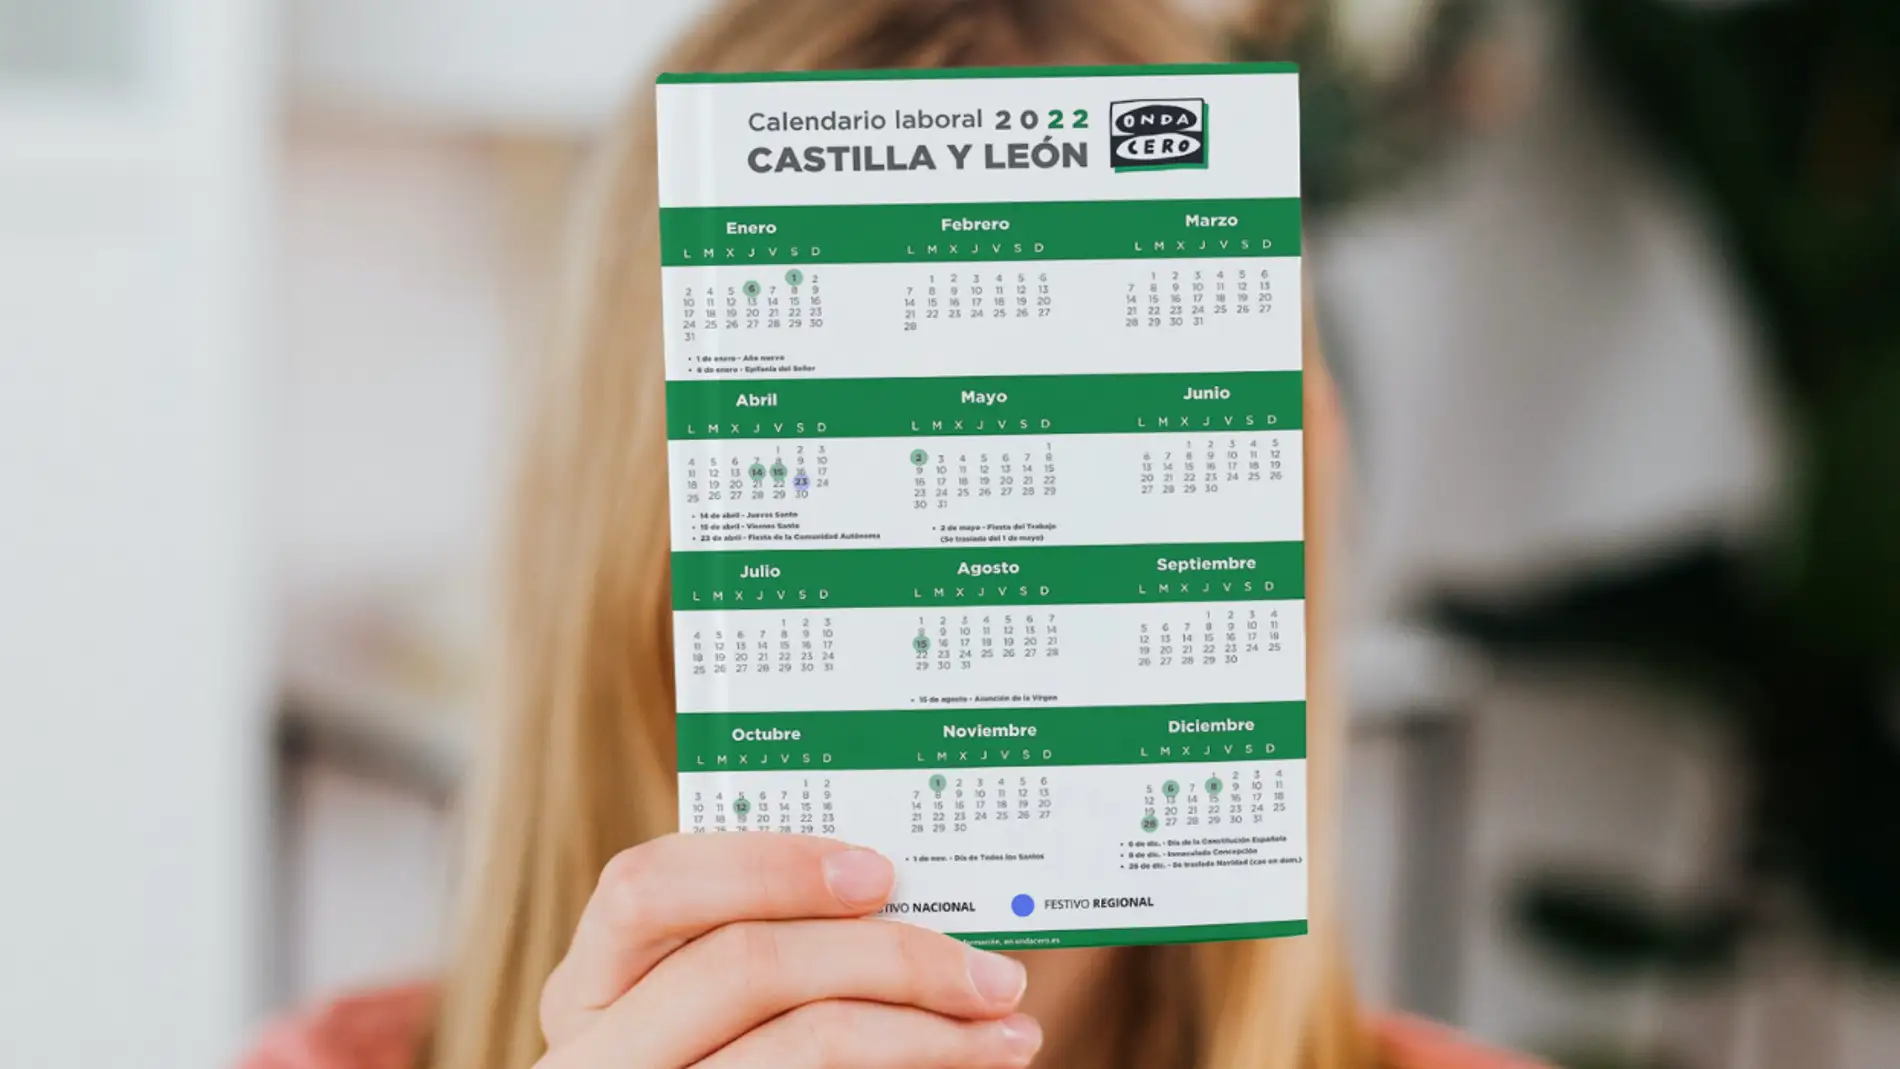 Calendario laboral de Castilla y León para 2022: días festivos